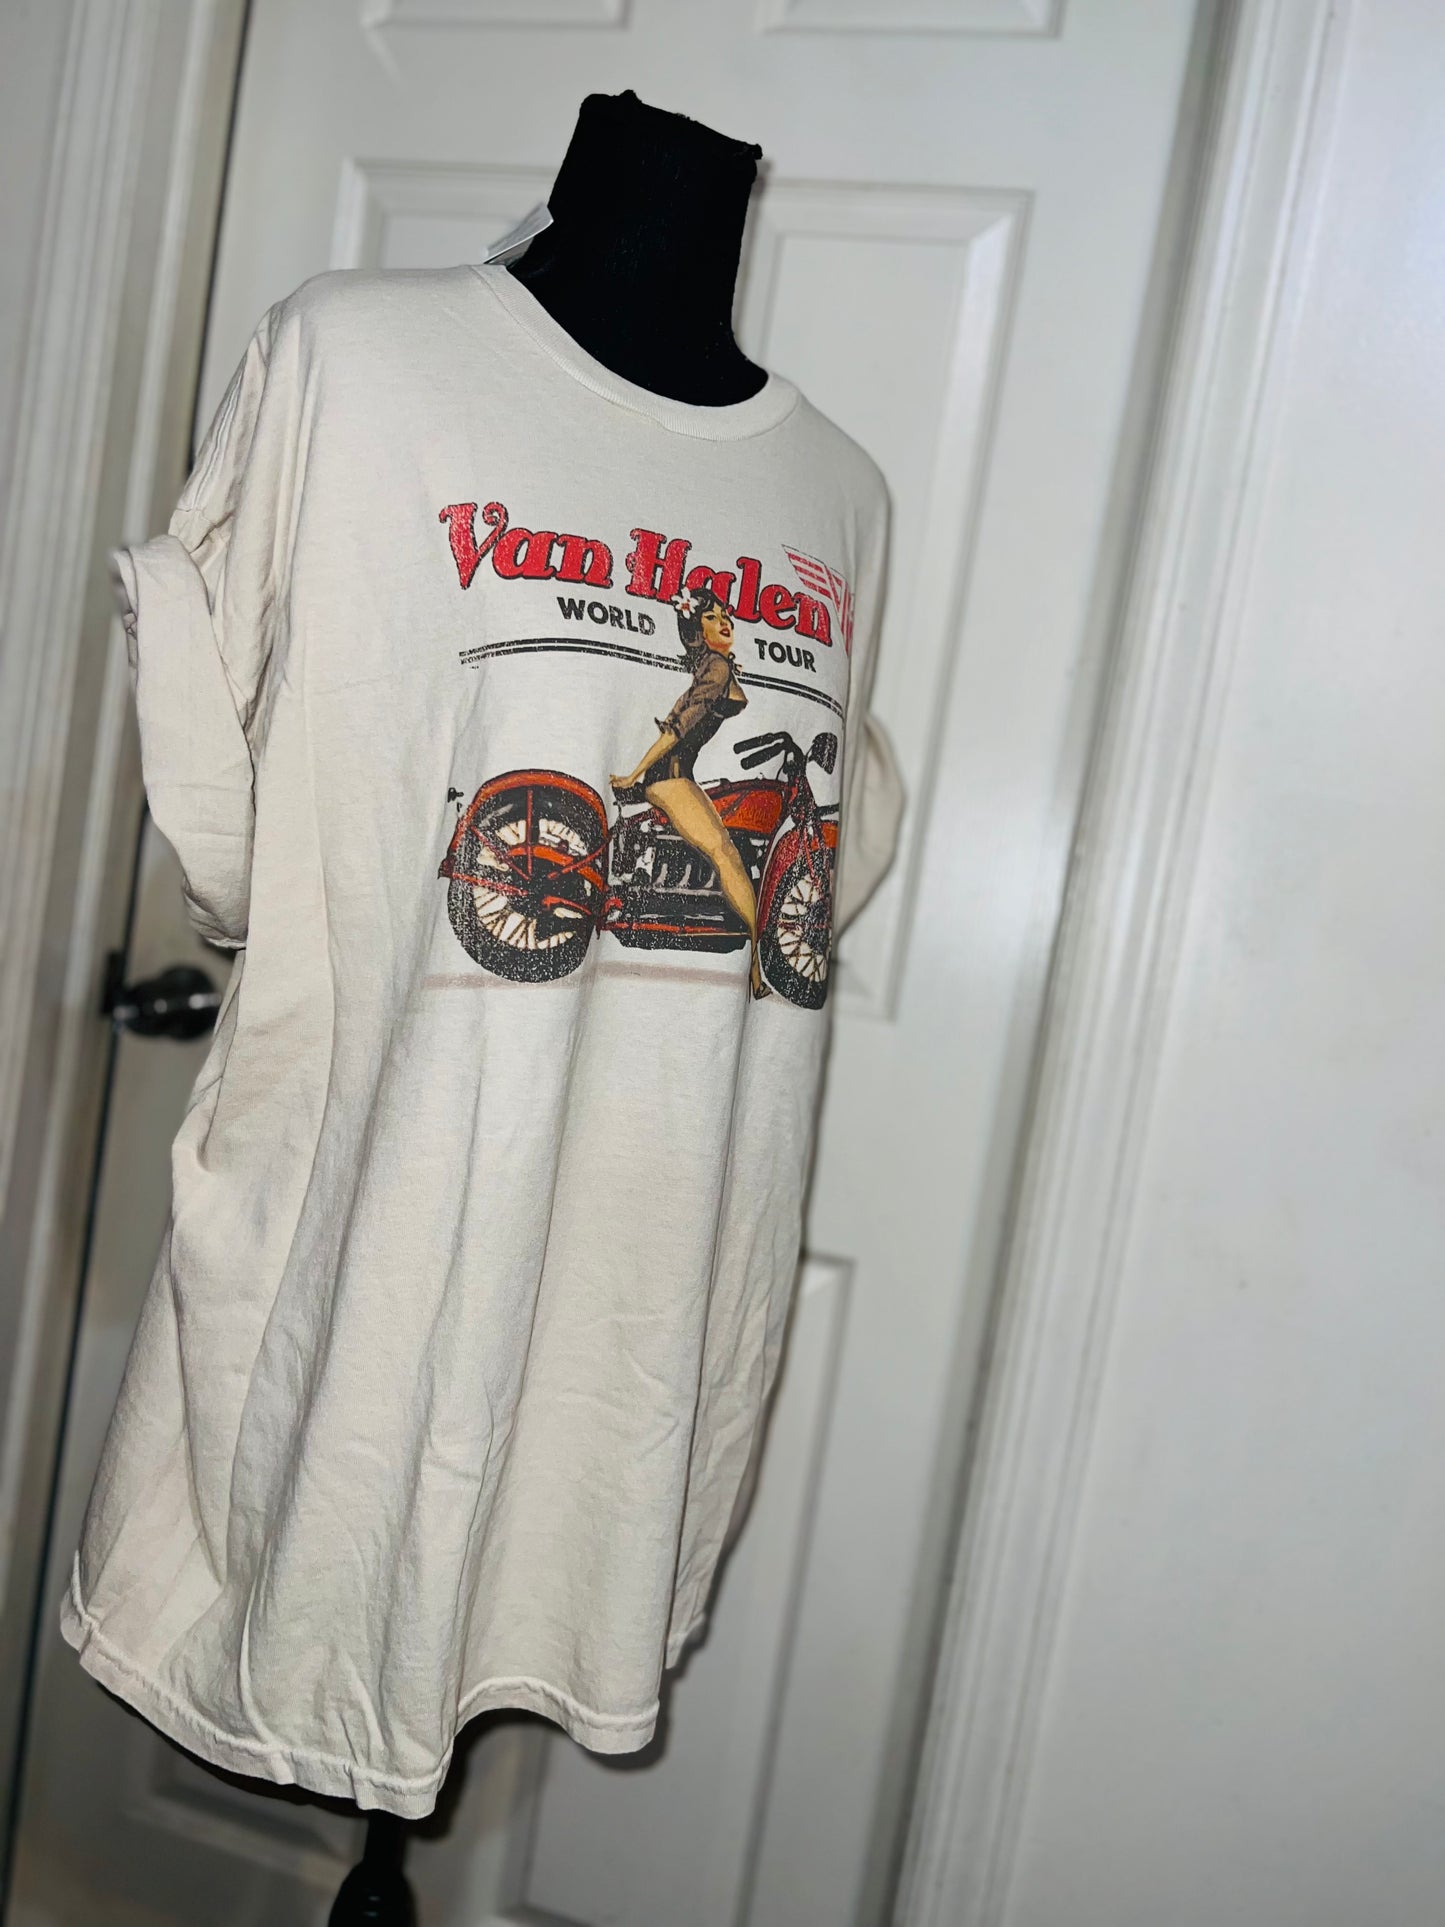 Van Halen Motorcycle Pin Up Oversized Tee